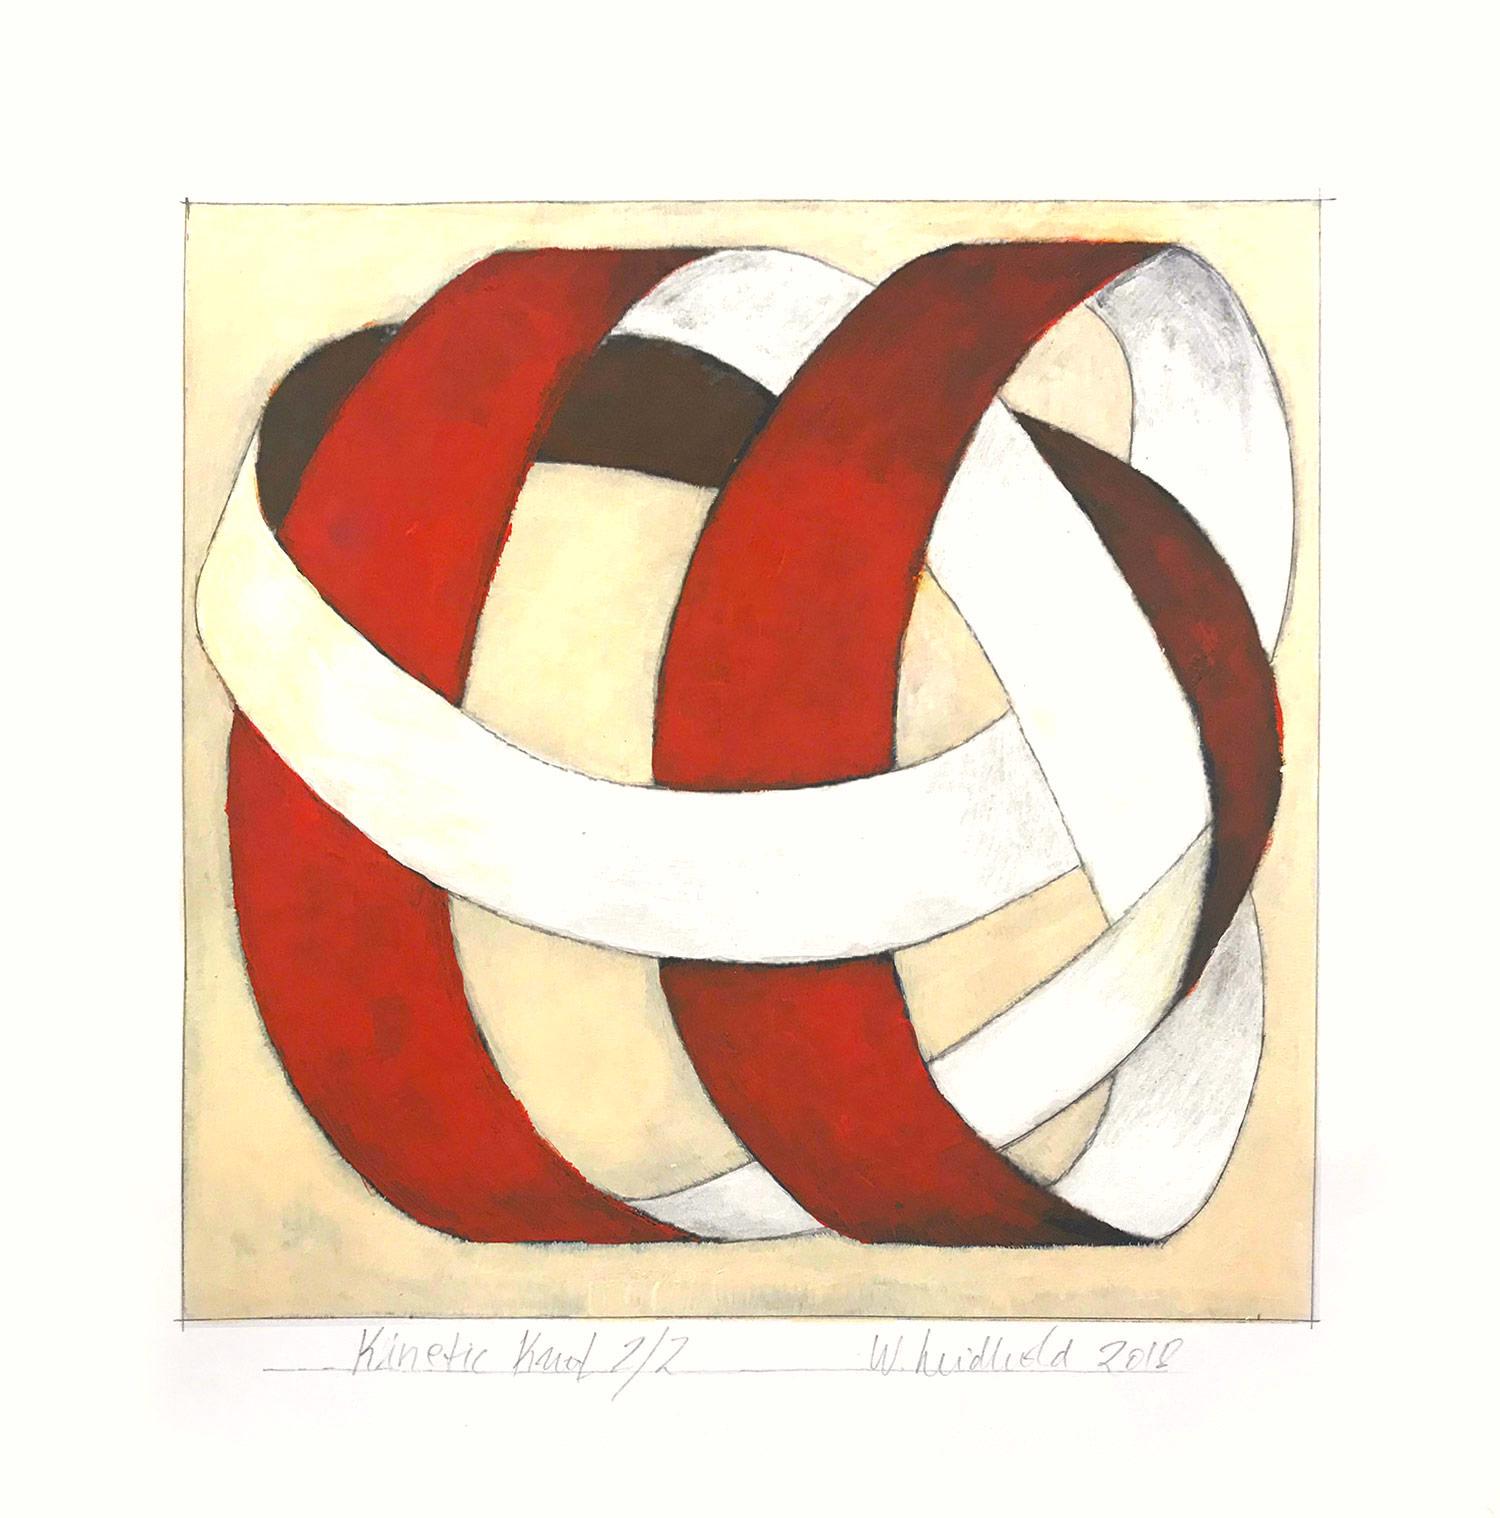 Figurative Painting Wolfgang Leidhold - "Kinetic Knot n° 2/2" Peinture figurative abstraite de nœud sur papier